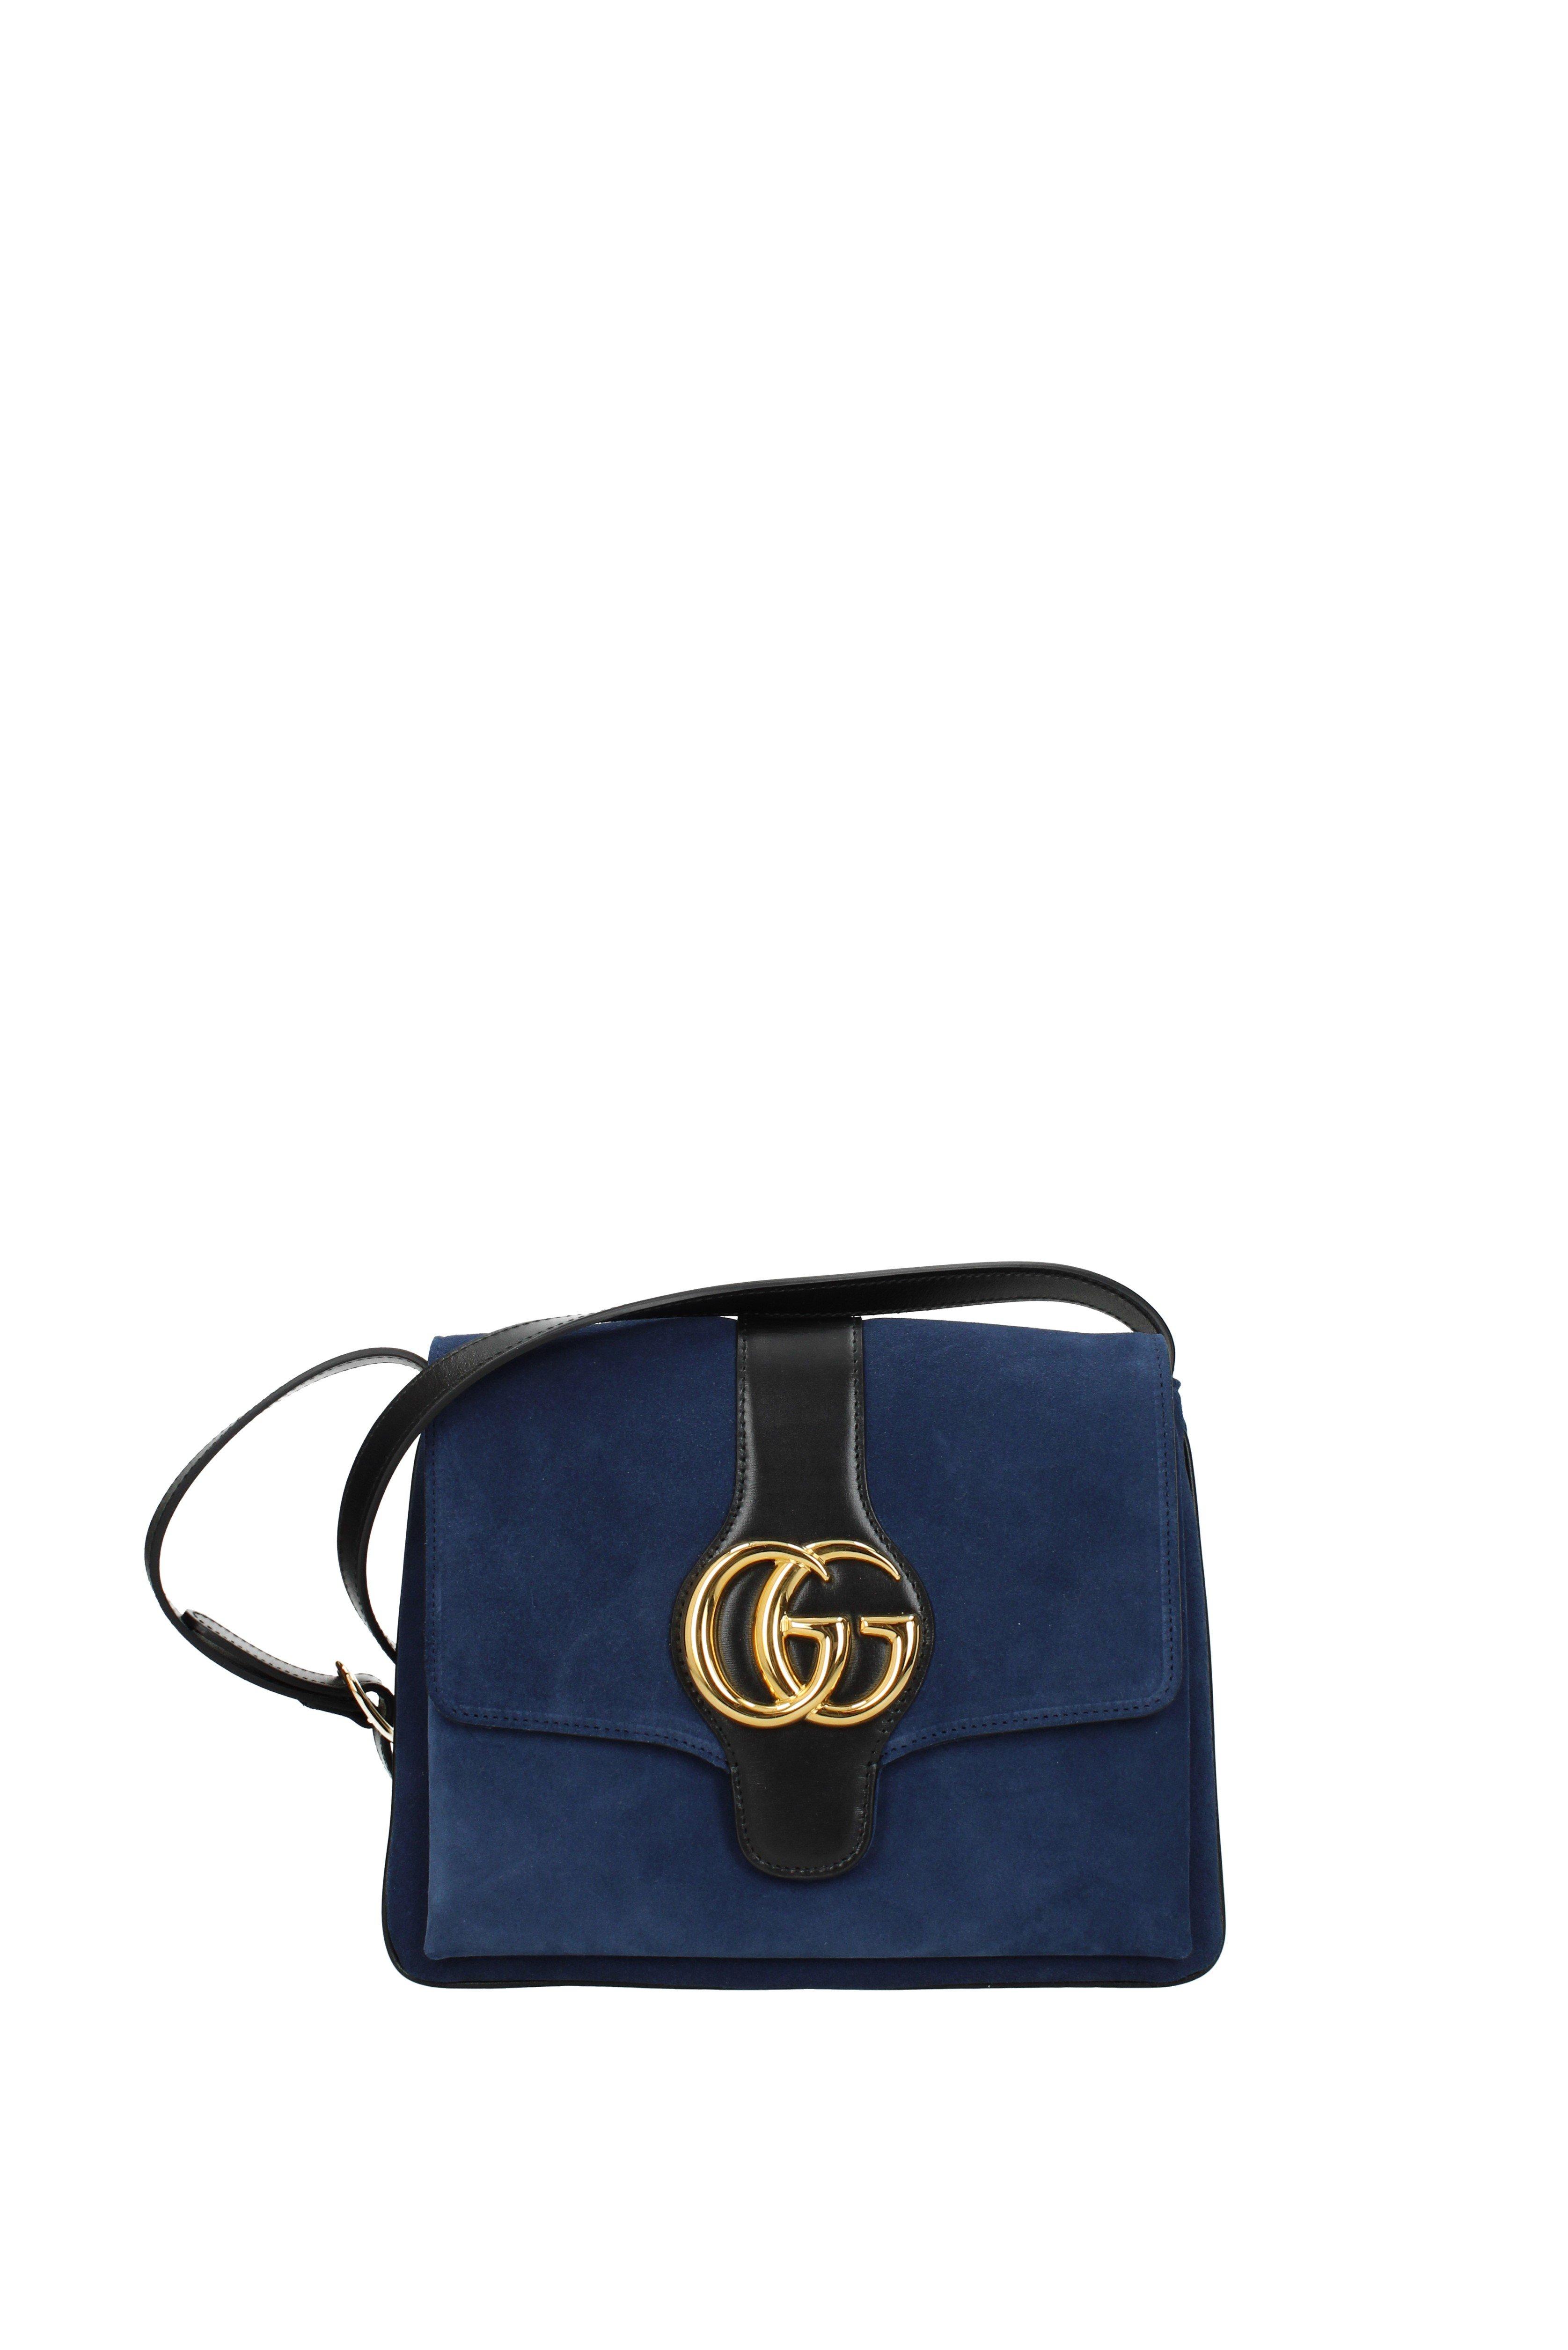 Gucci Crossbody Bag in Blue - Lyst